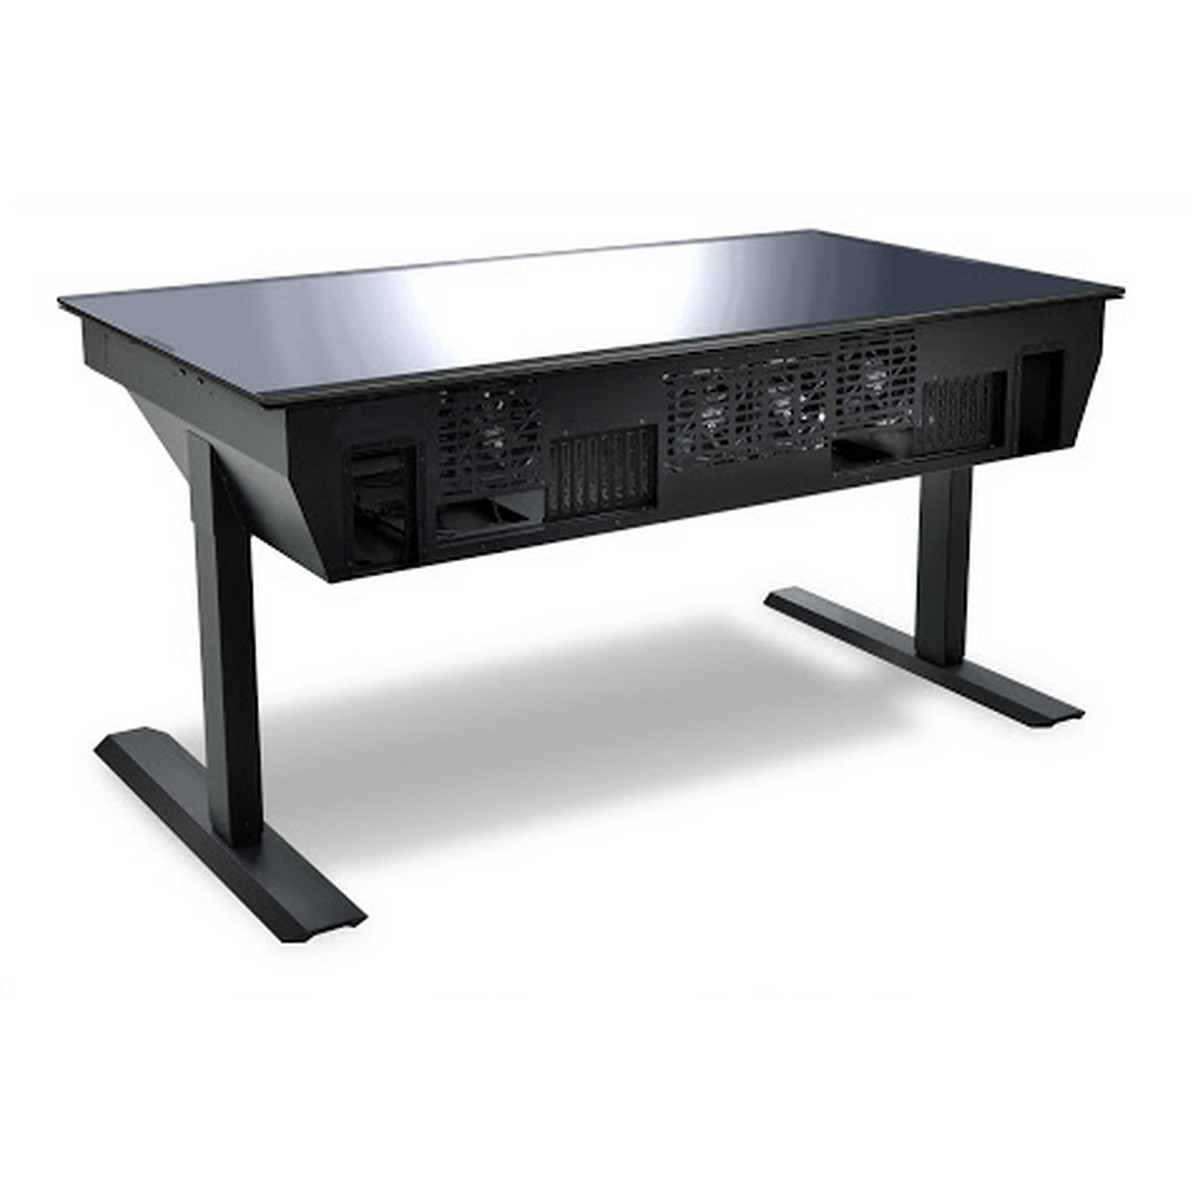 Lian Li - Lian Li DK-05F Electrical Height Adjustable Desk Case - Black